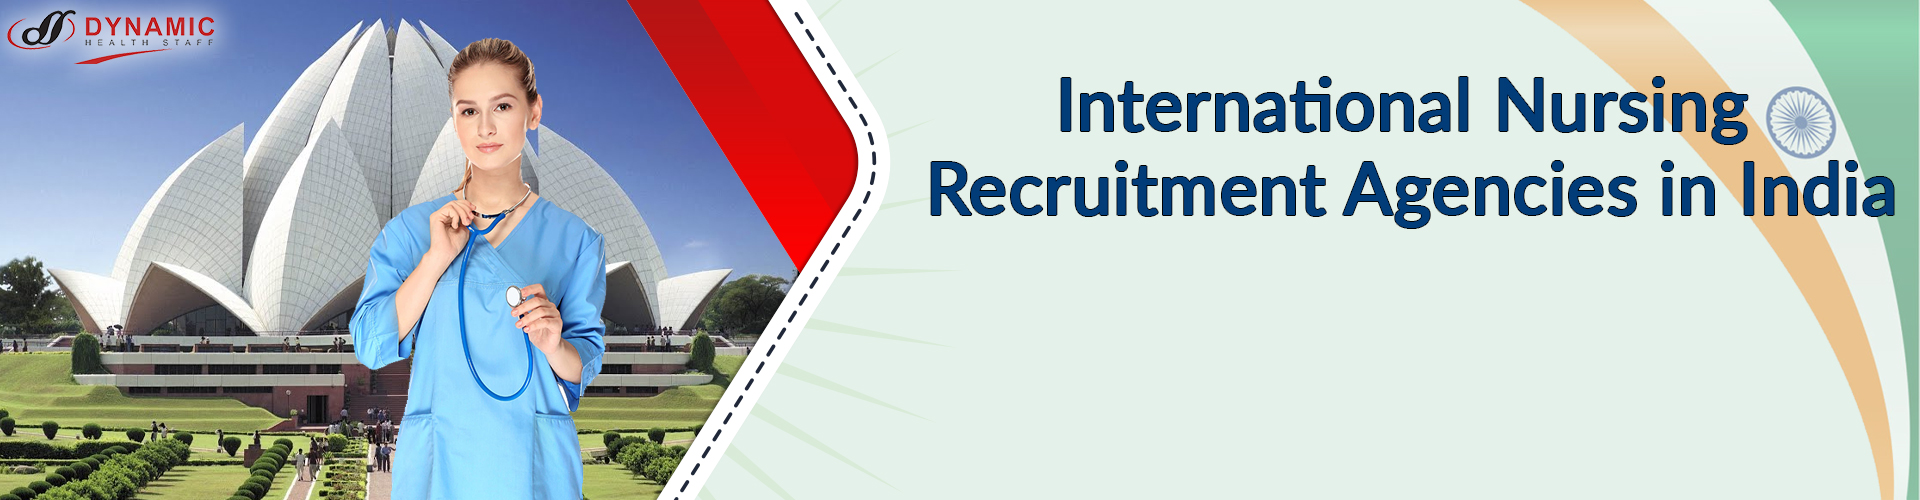 International Nursing Recruitment Agencies in India